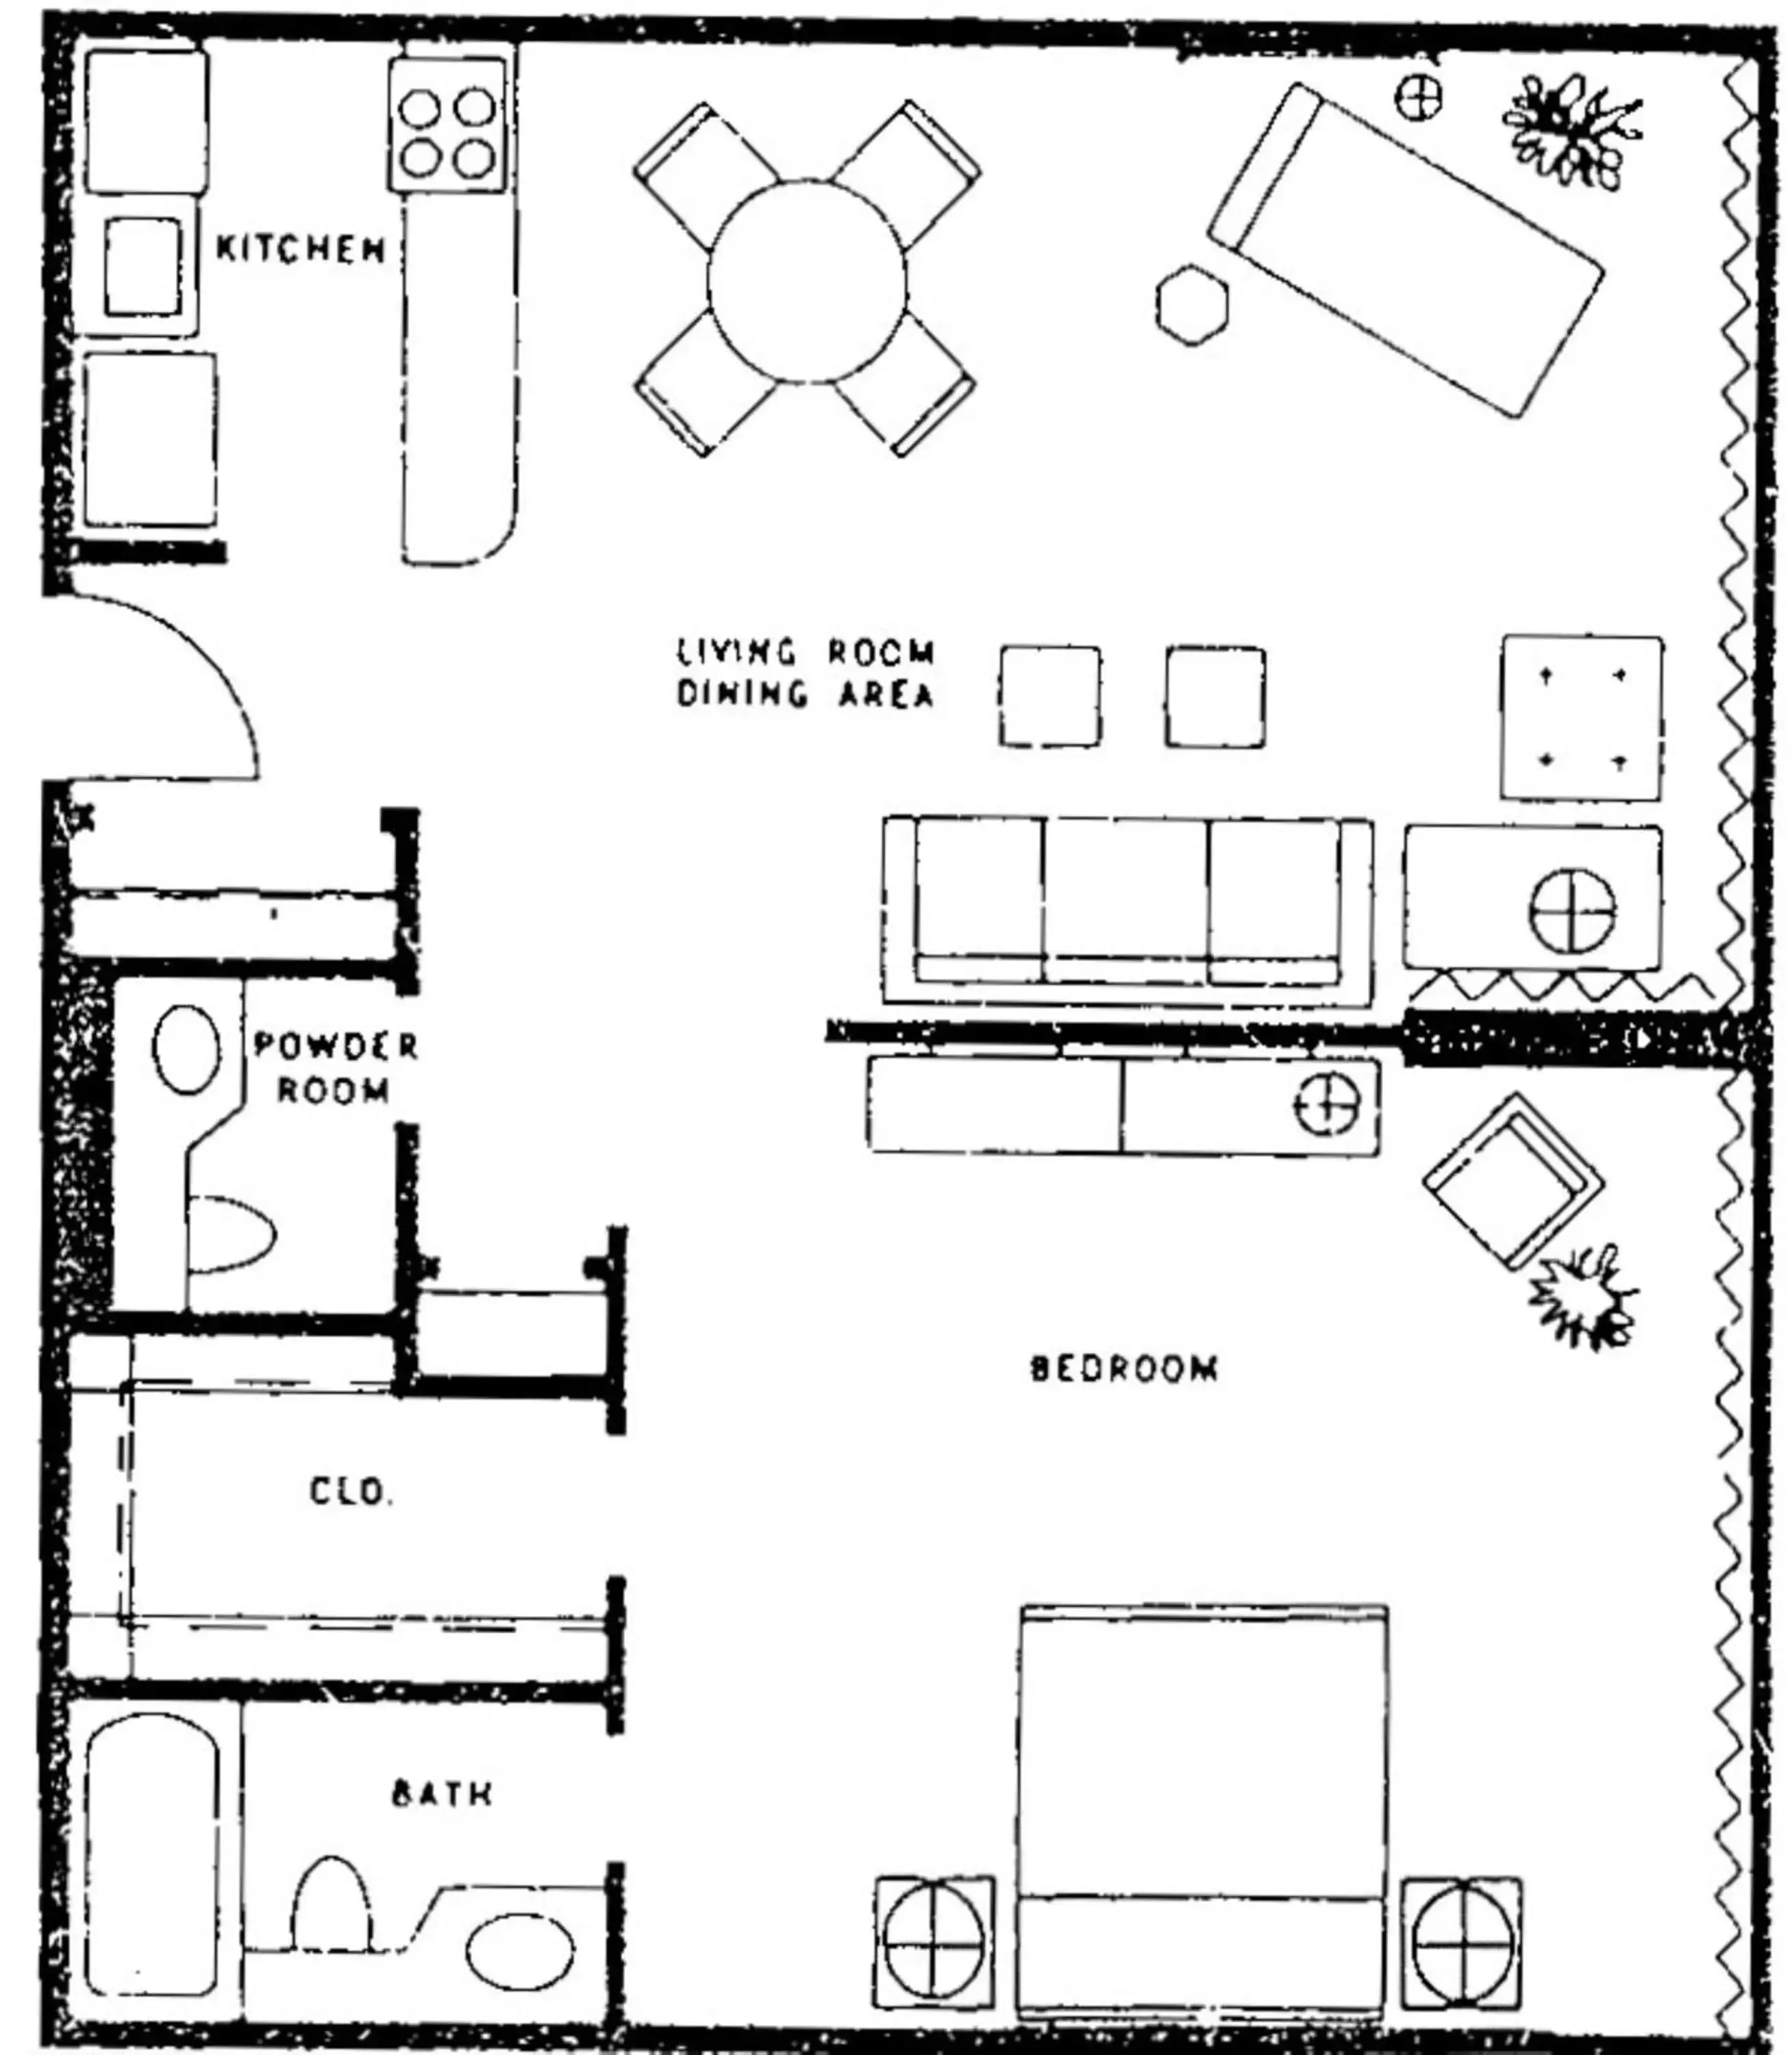 Area and facilities, Floor Plan in Jockey Resort Suites Center Strip